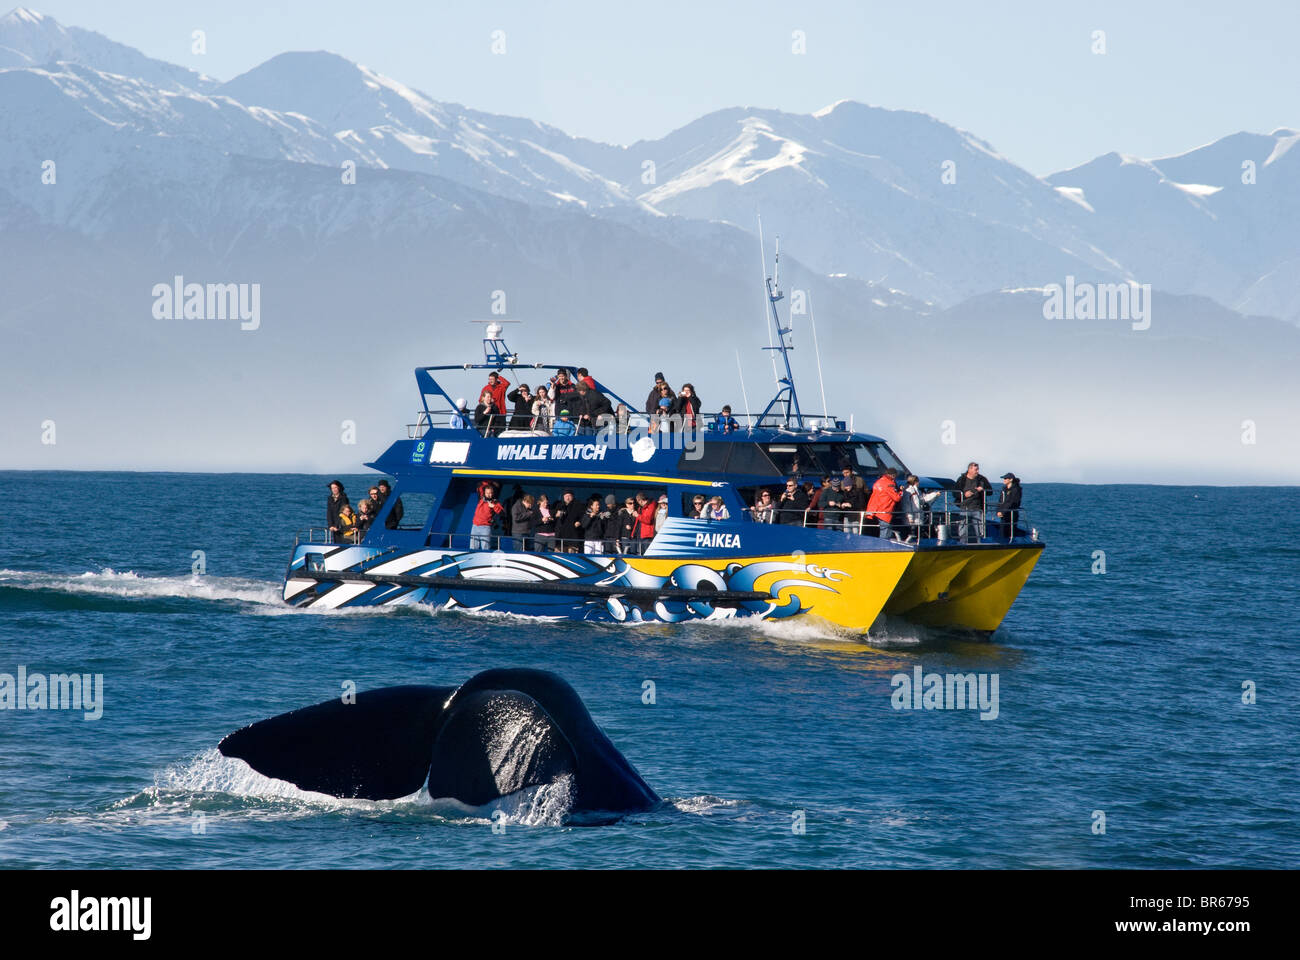 Una ballena inmersiones en frente de observadores de ballenas en Kaikoura, Nueva Zelanda Foto de stock